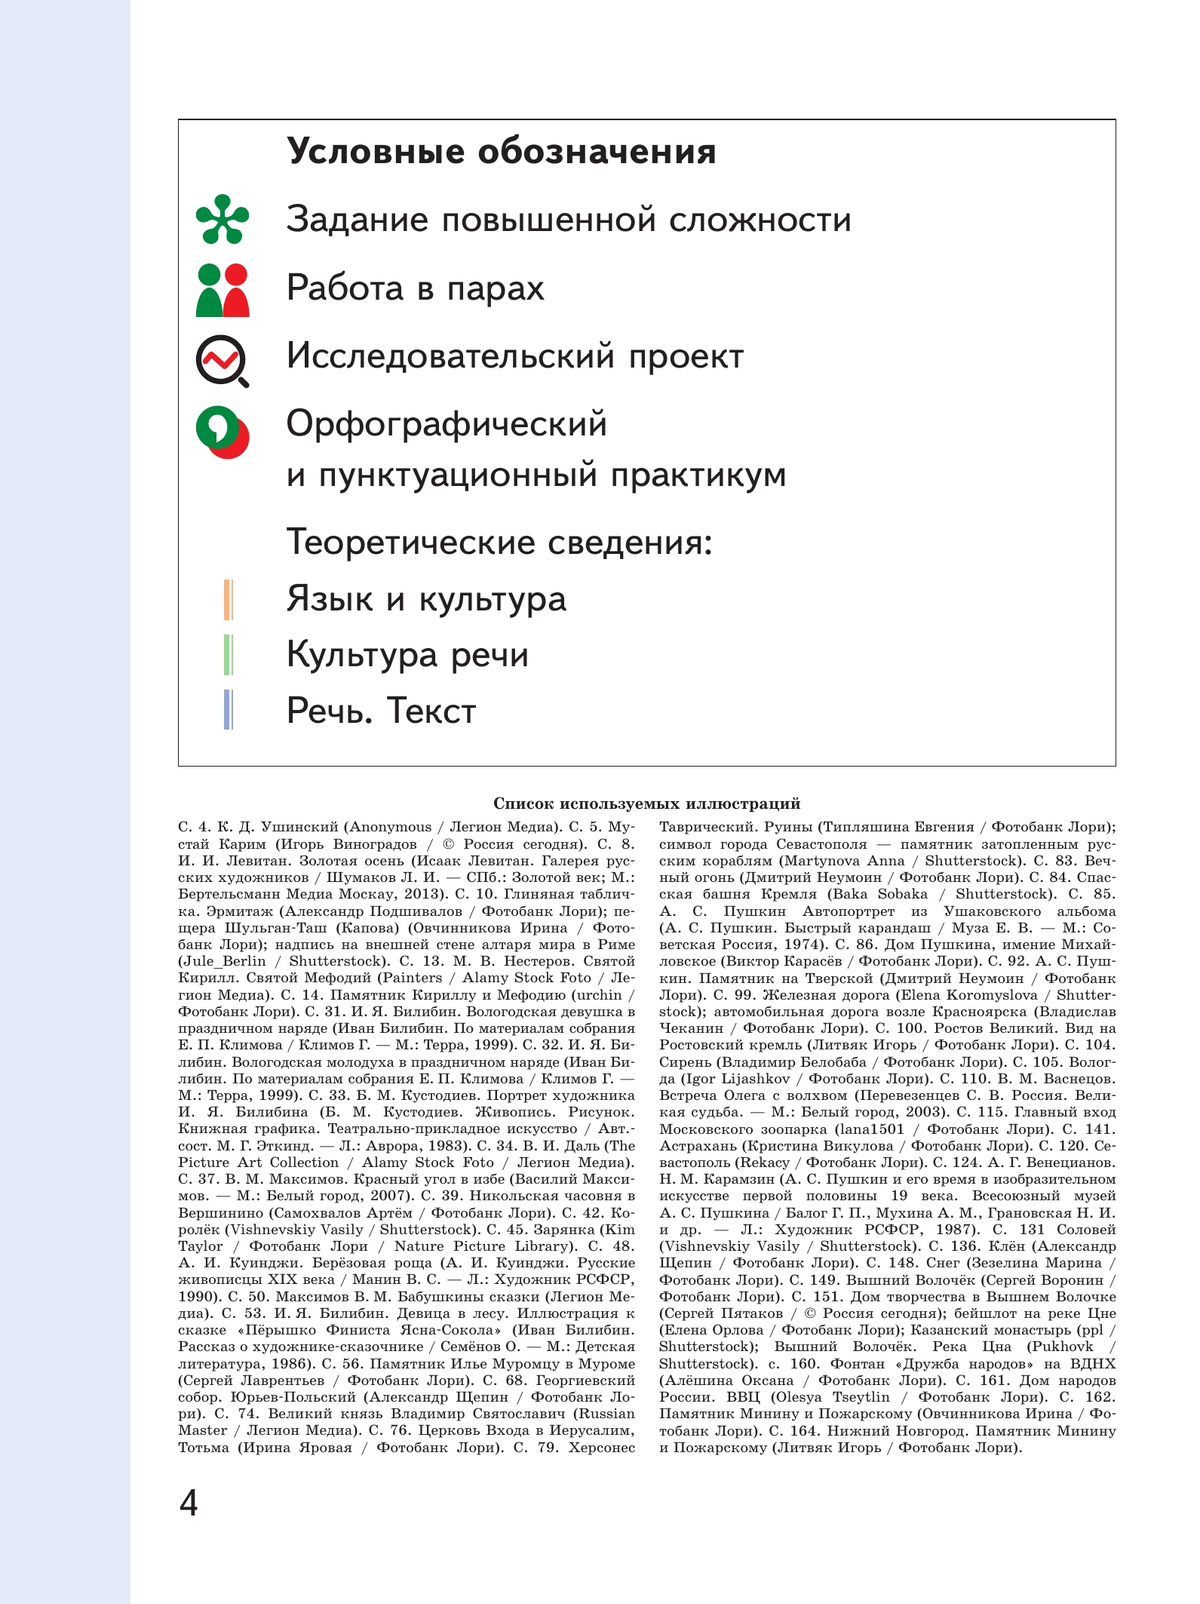 Русский родной язык. 5 класс. Учебное пособие. В 3 ч. Часть 3 (для слабовидящих обучающихся) 7